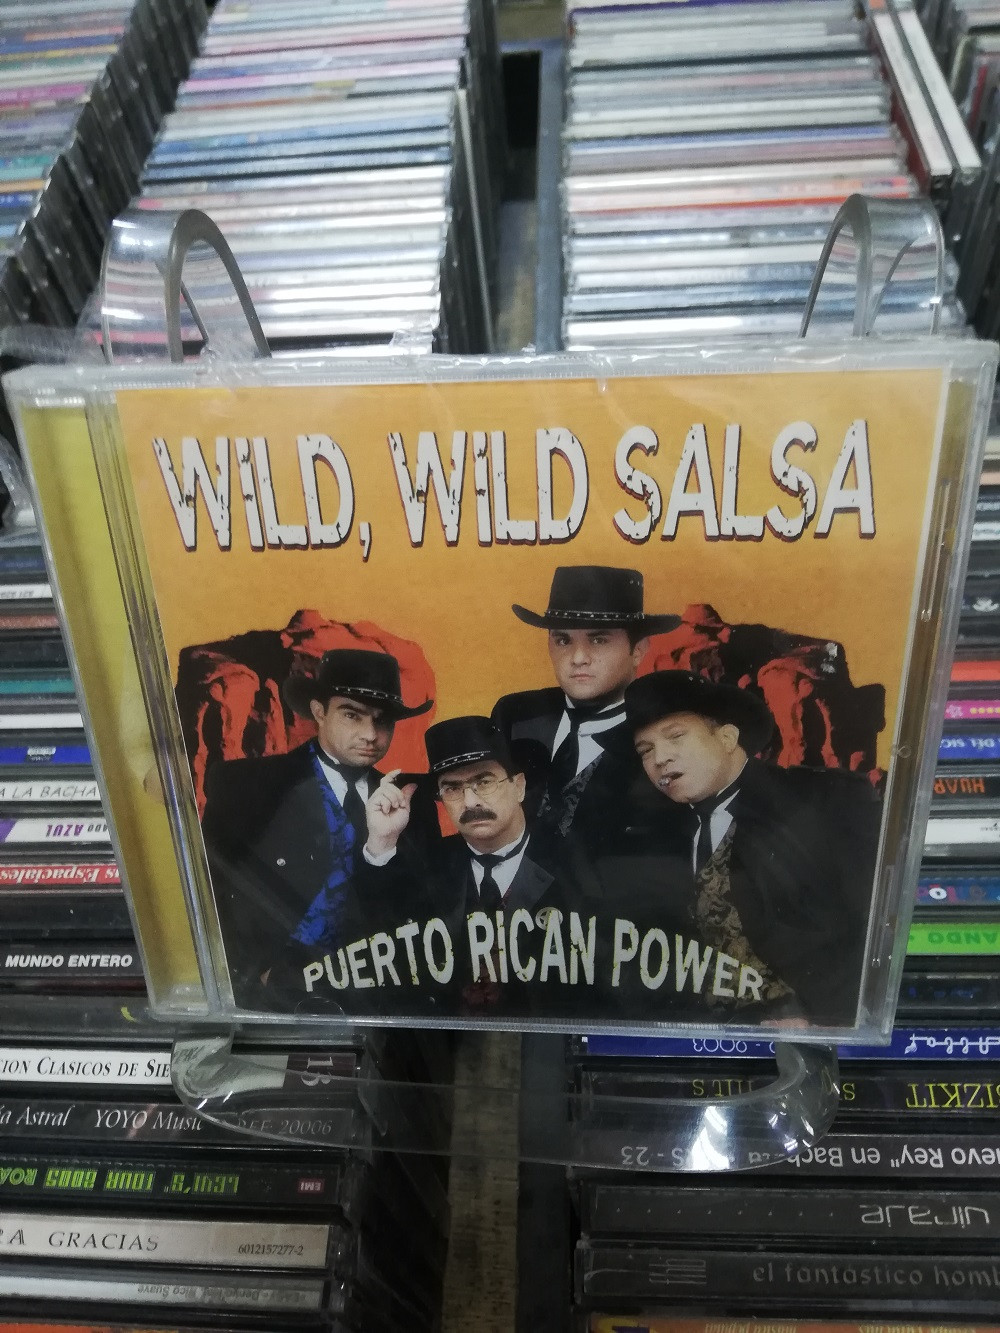 Imagen CD PUERTO RICAN POWER - WILD, WILD SALSA